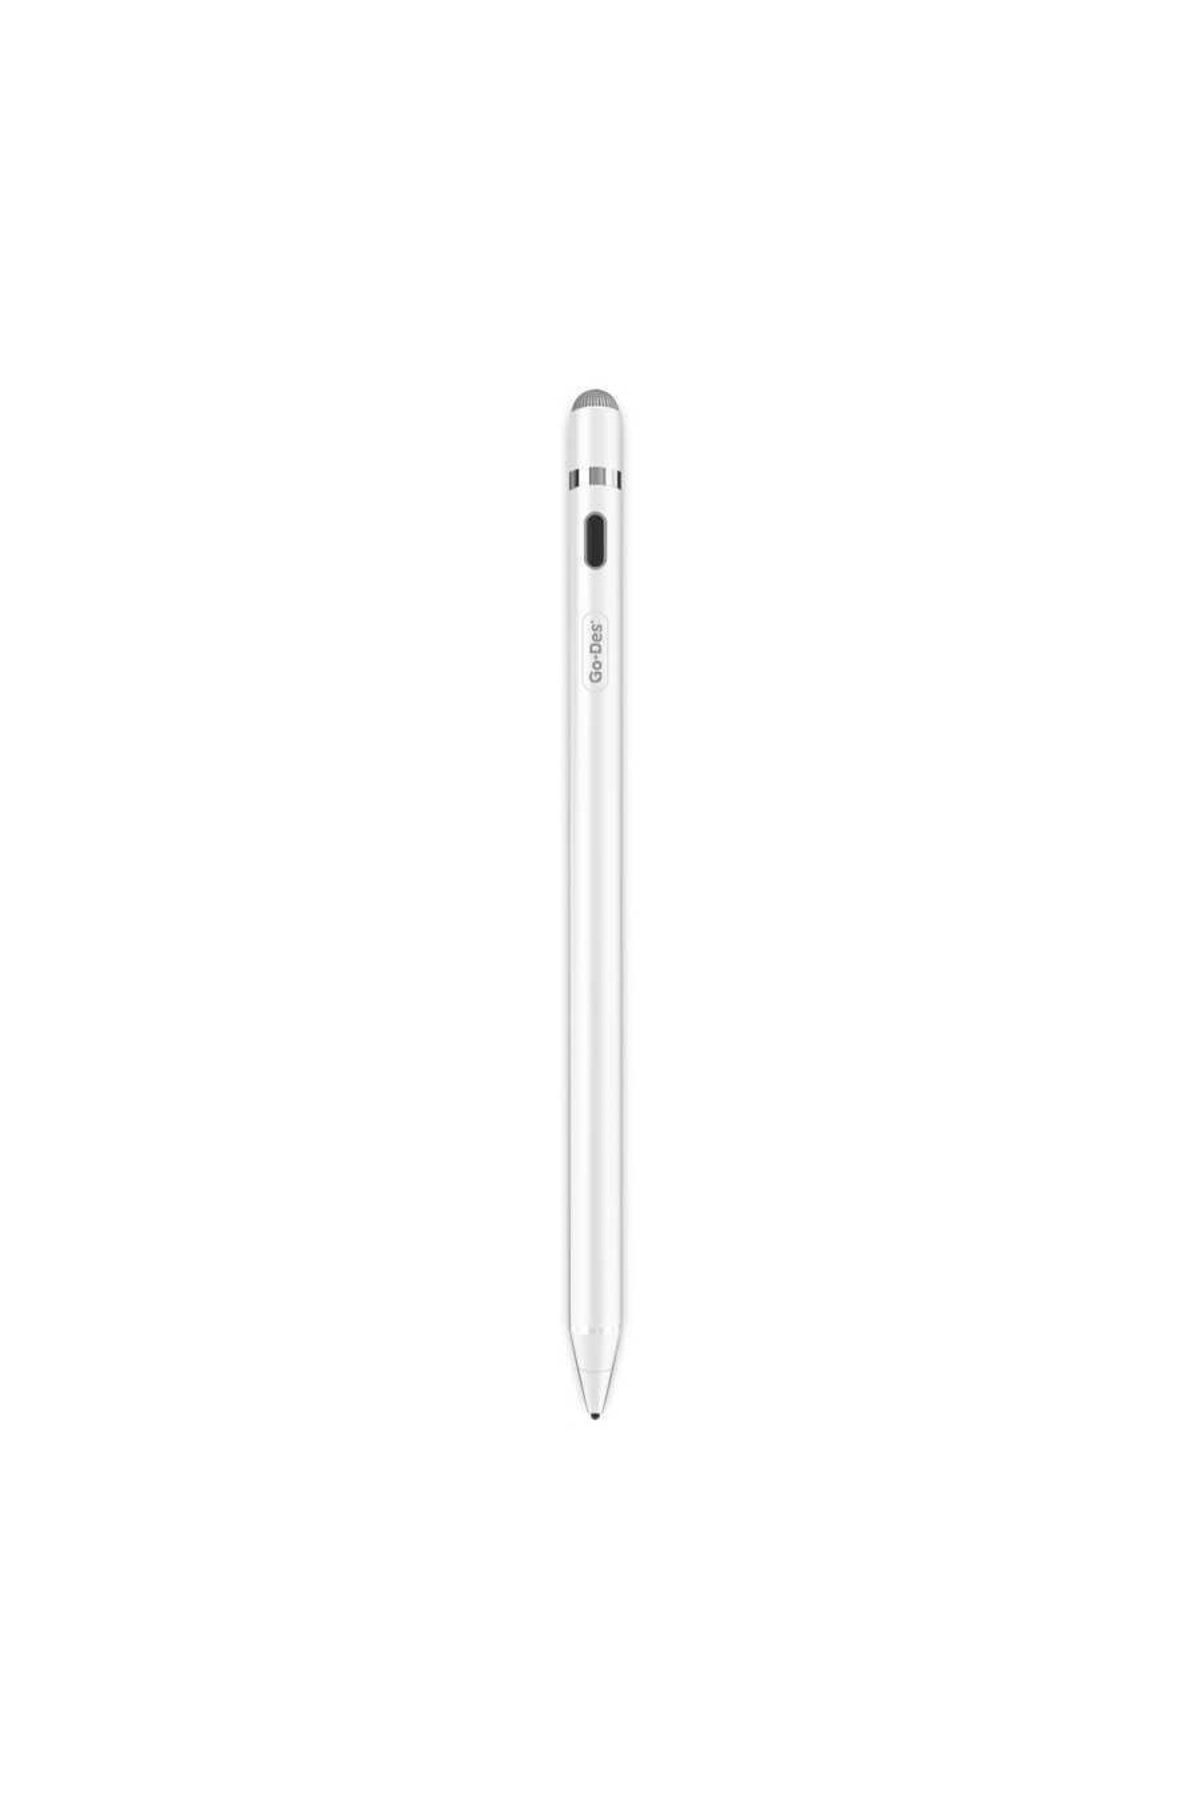 Go-Des Go Des Gd-p1205 Tüm Cihazlar Ile Uyumlu Stylus Pencil Kapasitif Dokunmatik Kalem